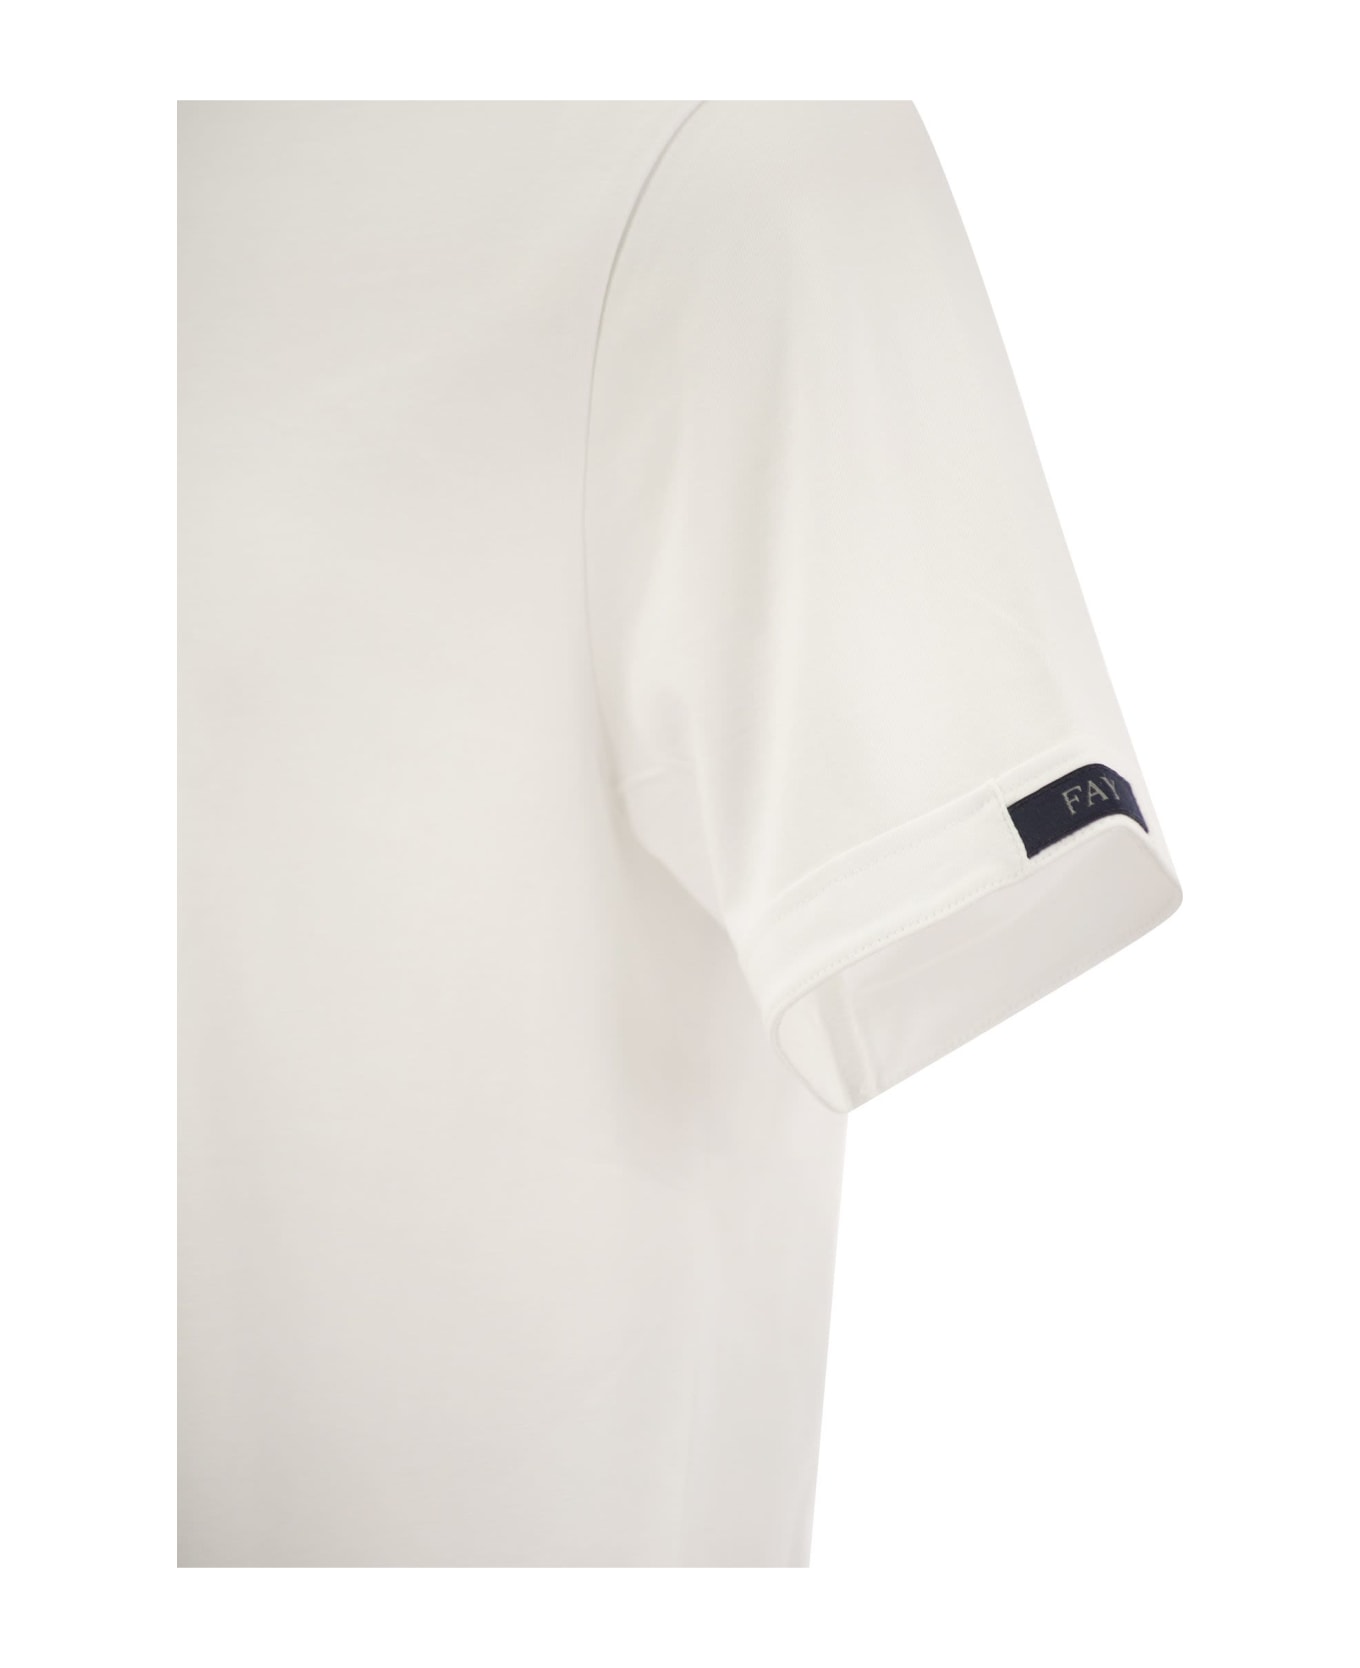 Fay White T-shirt - White シャツ